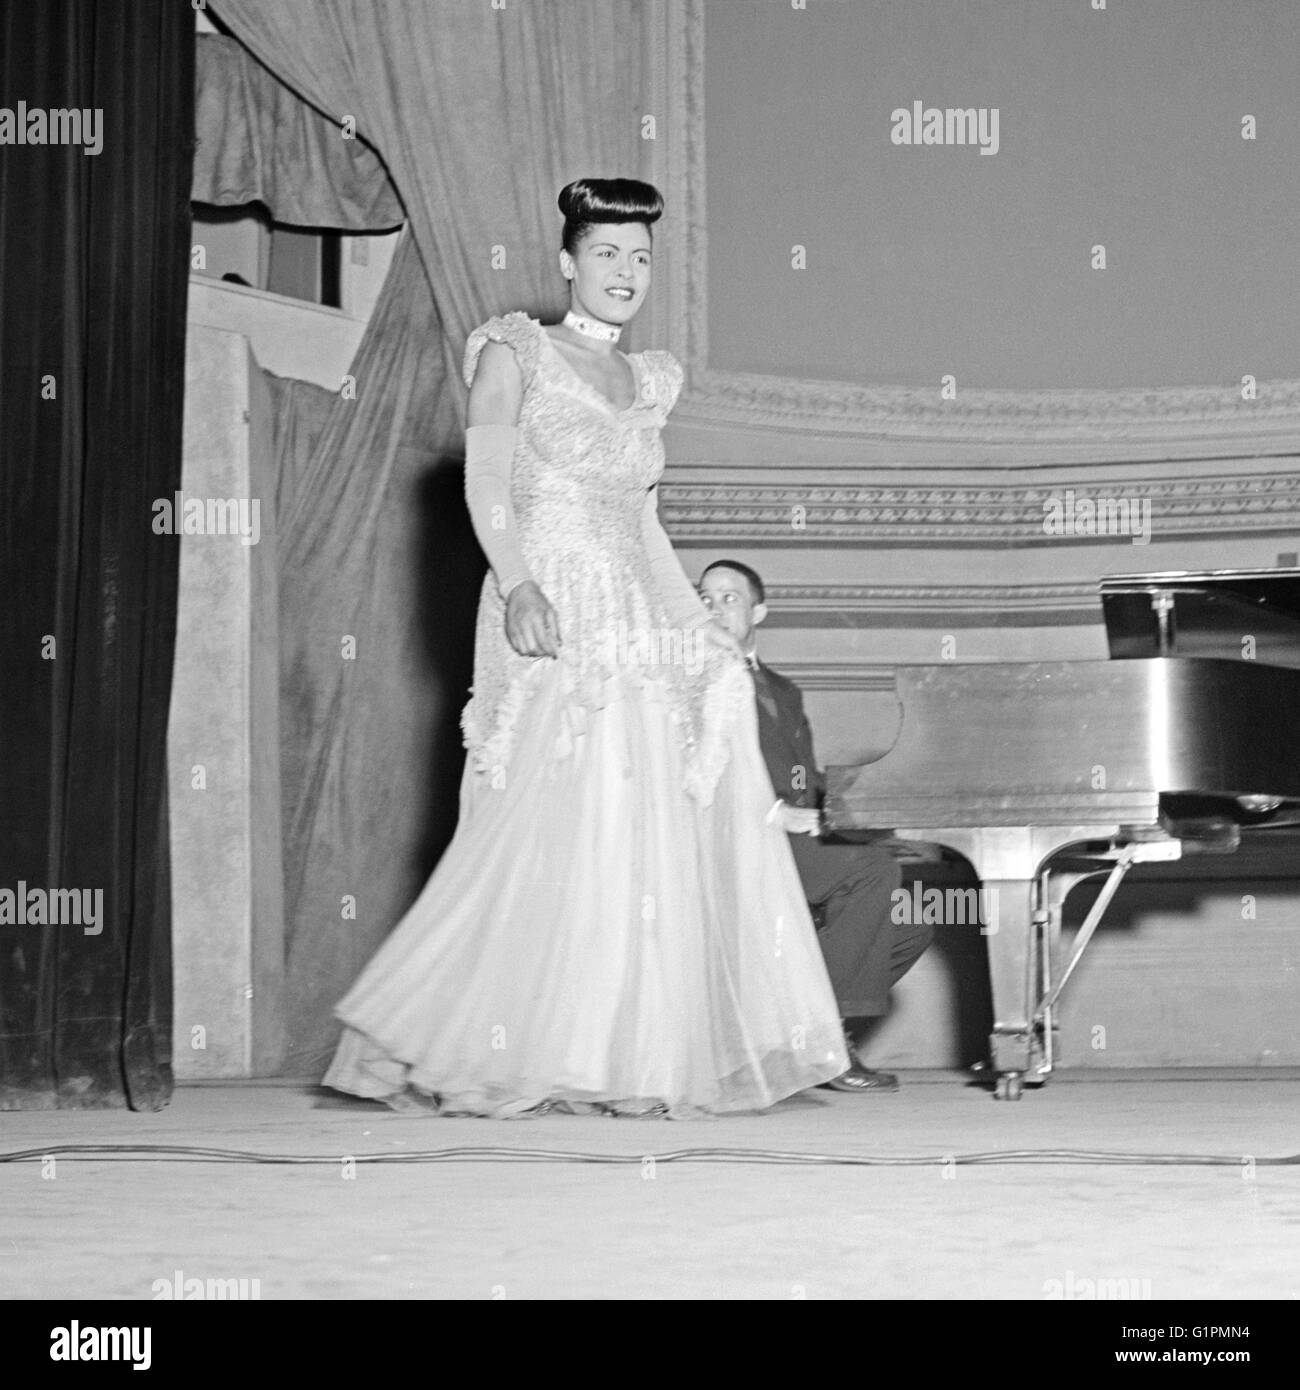 BILLIE HOLIDAY (1915-1959). US-amerikanische Sängerin. Auf der Bühne in der Carnegie Hall in New York City. Foto von Gottlieb, c1947. Stockfoto